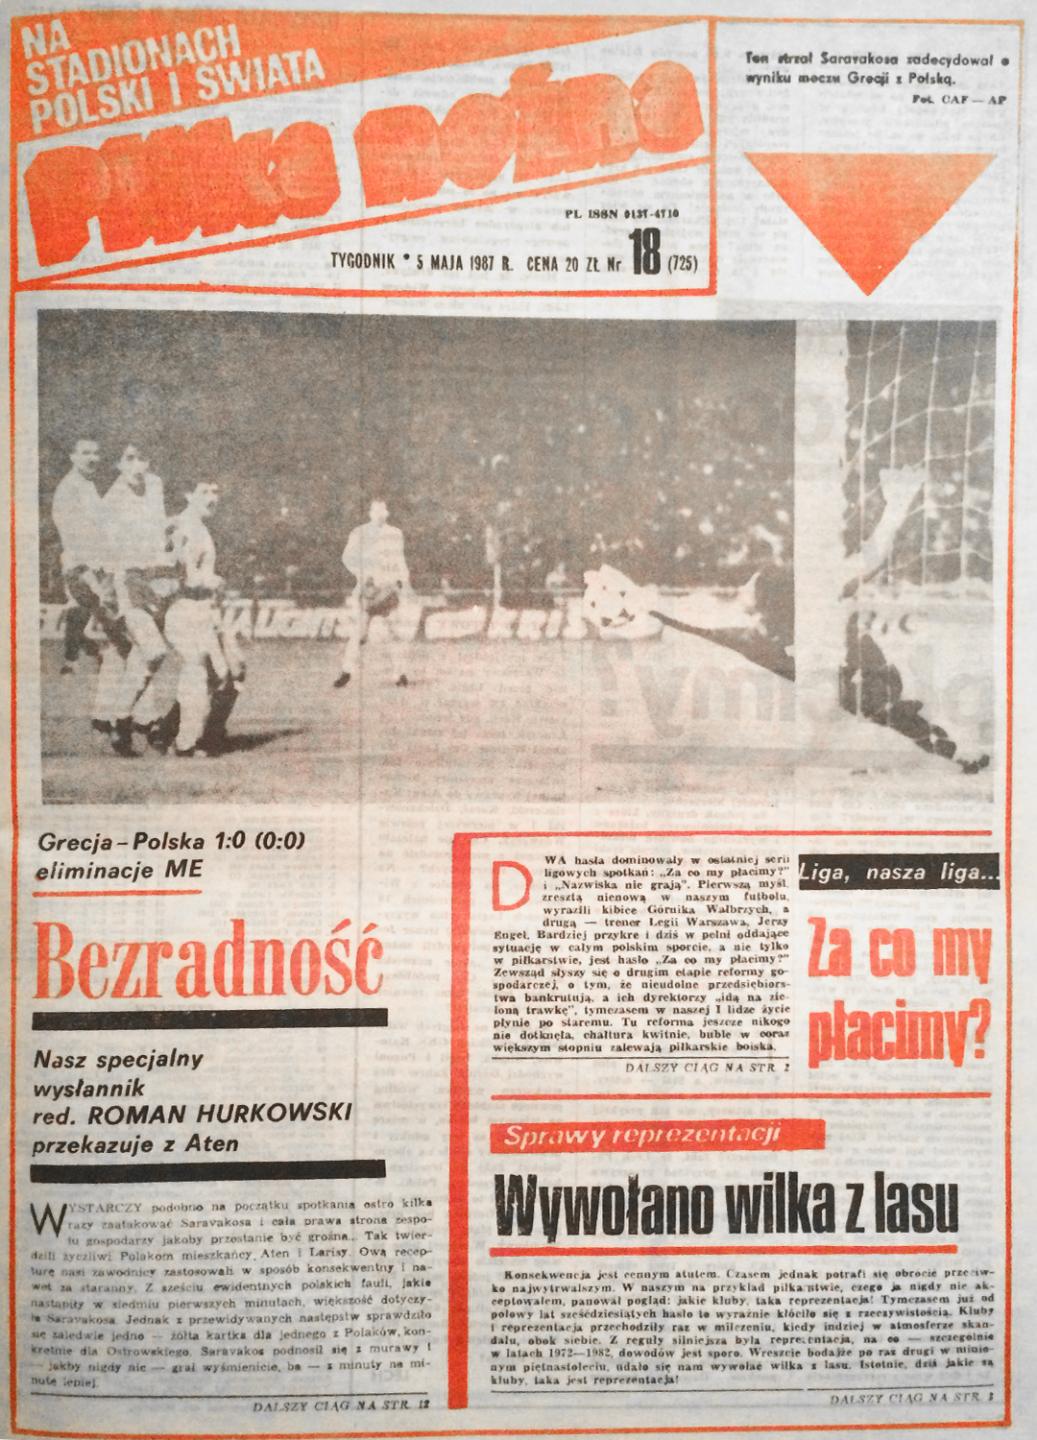 Piłka nożna po meczu Grecja - Polska (29.04.1987)